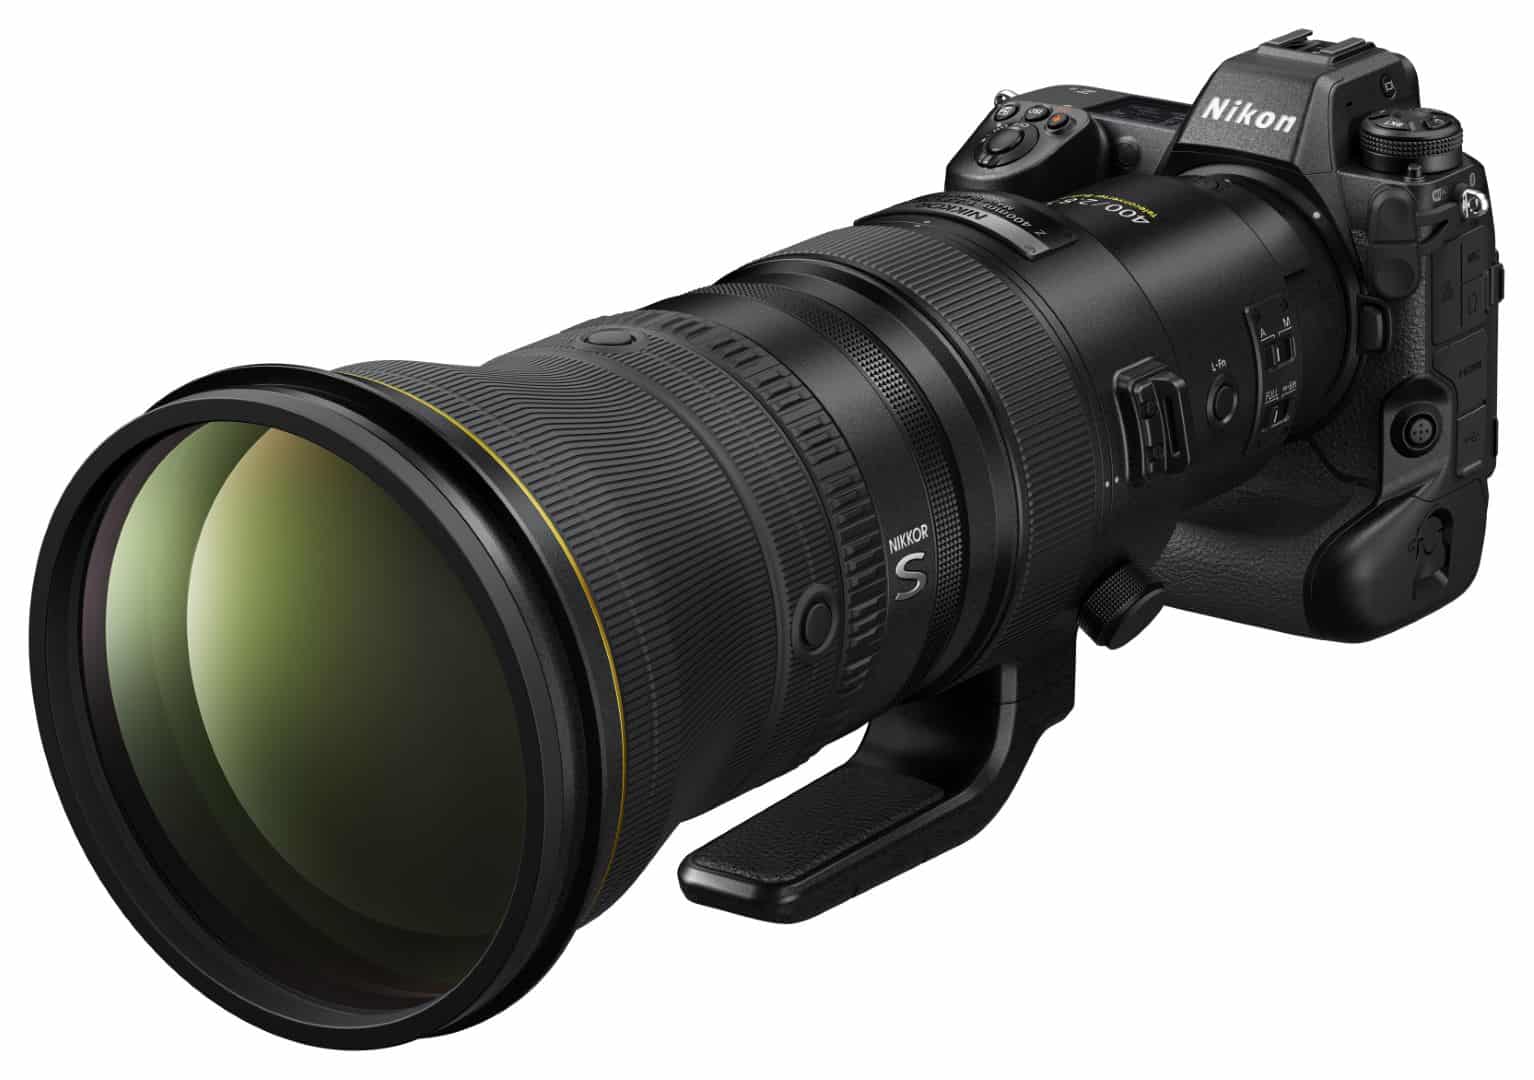 Nikon 400mm F2.8 TC VR S ra mắt, ống kính trị giá 14000 USD đắt tiền dành cho ngàm Z